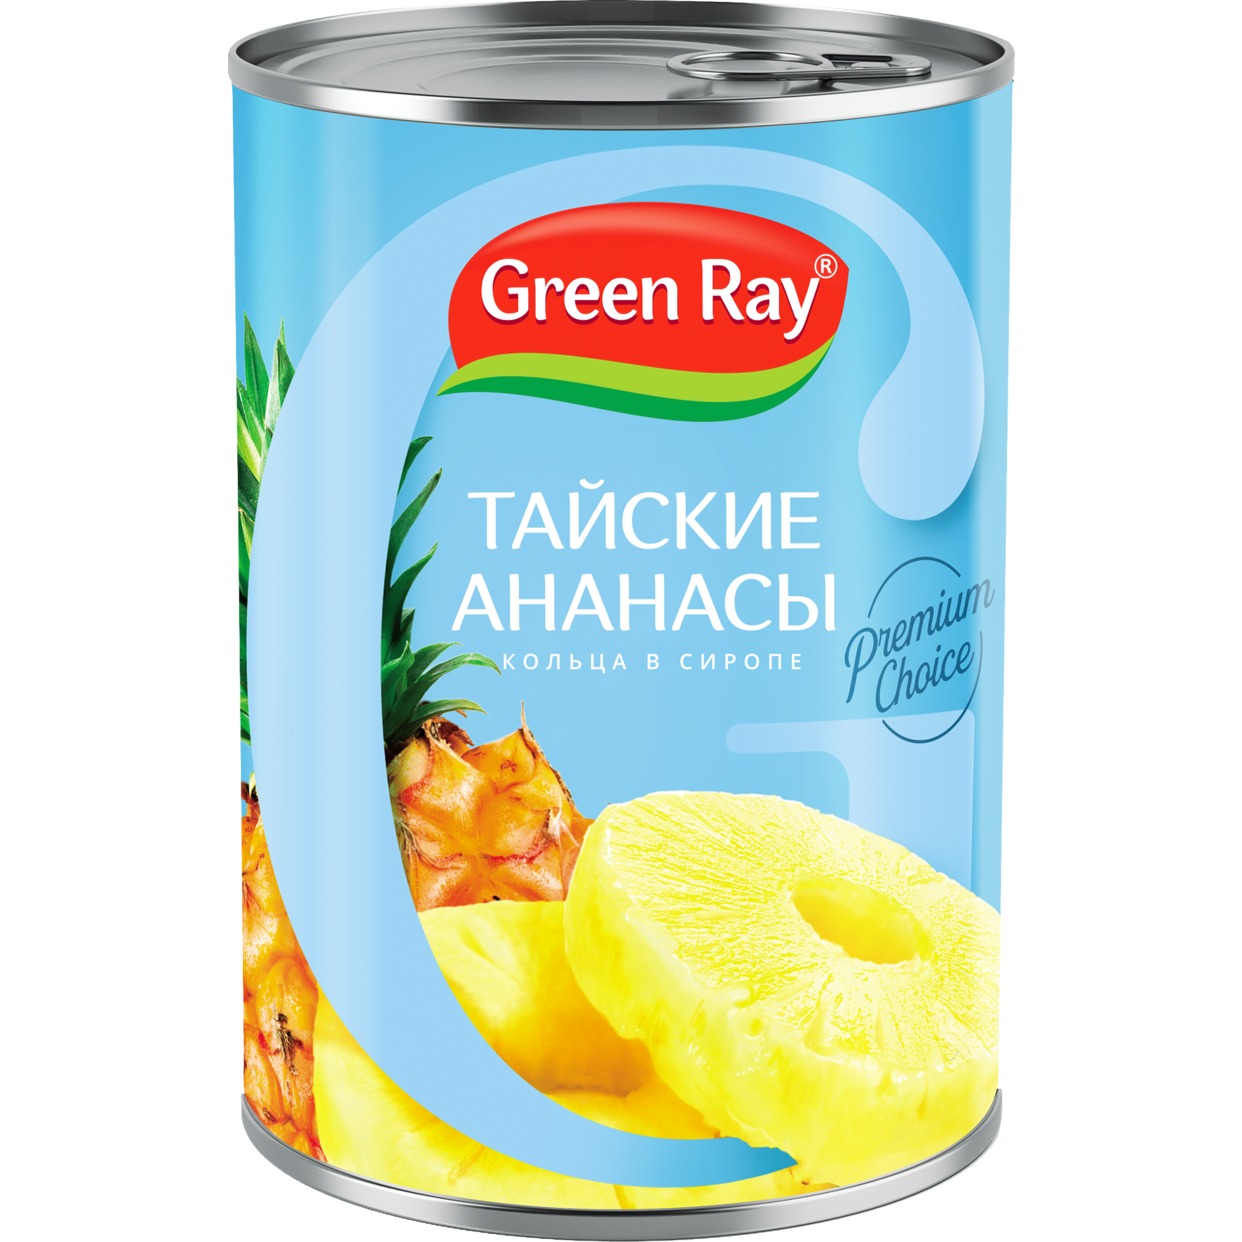 GREEN RAY Ананасы КОЛЬЦА  565г